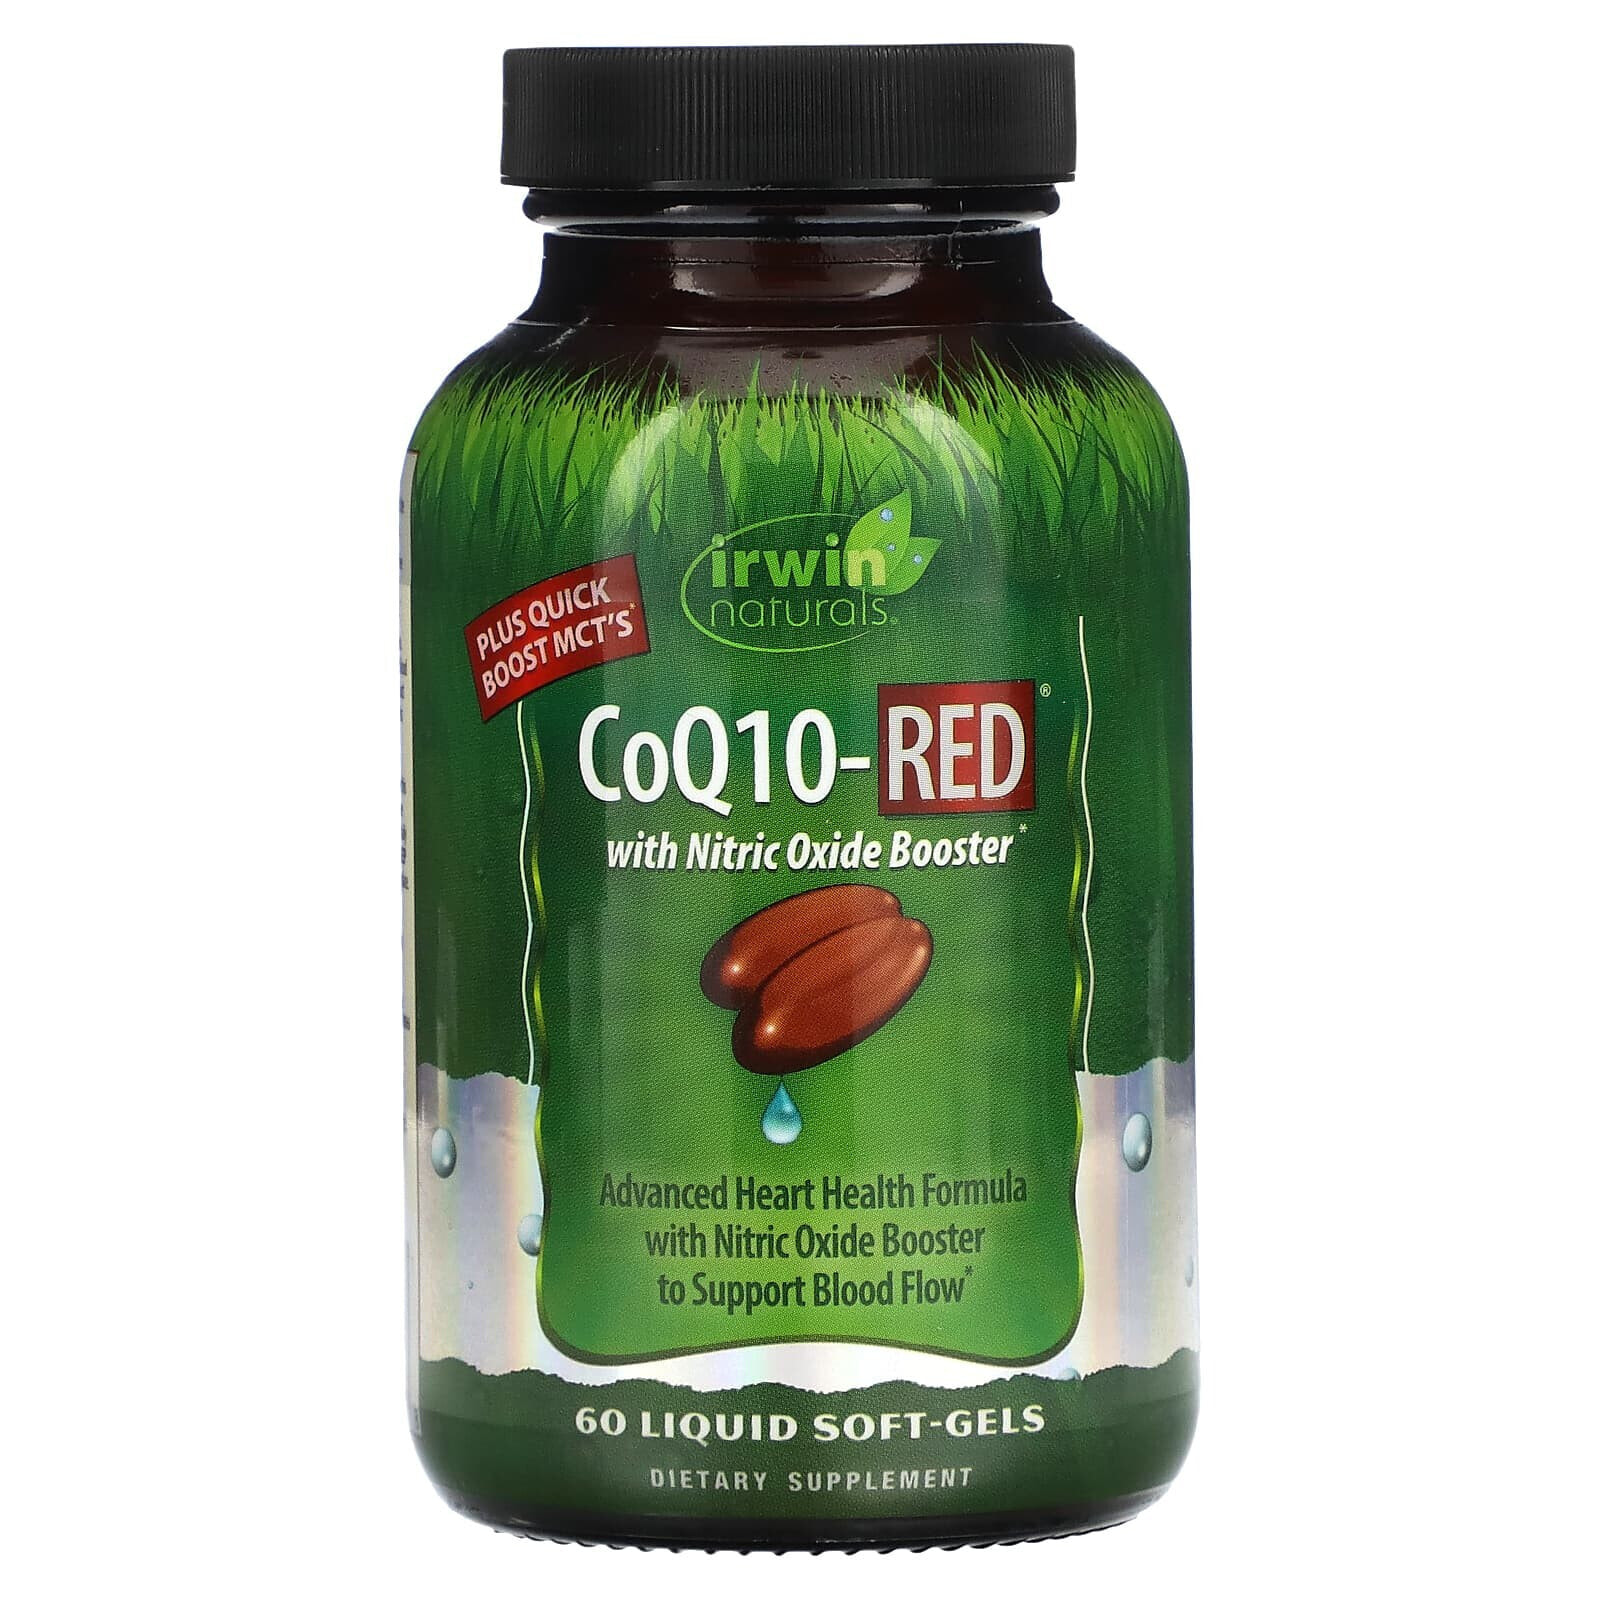 Irwin Naturals CoQ10-RED Усовершенствованная формула коэнзим Q10 для здоровья сердца 60 жидких гелевых капсул